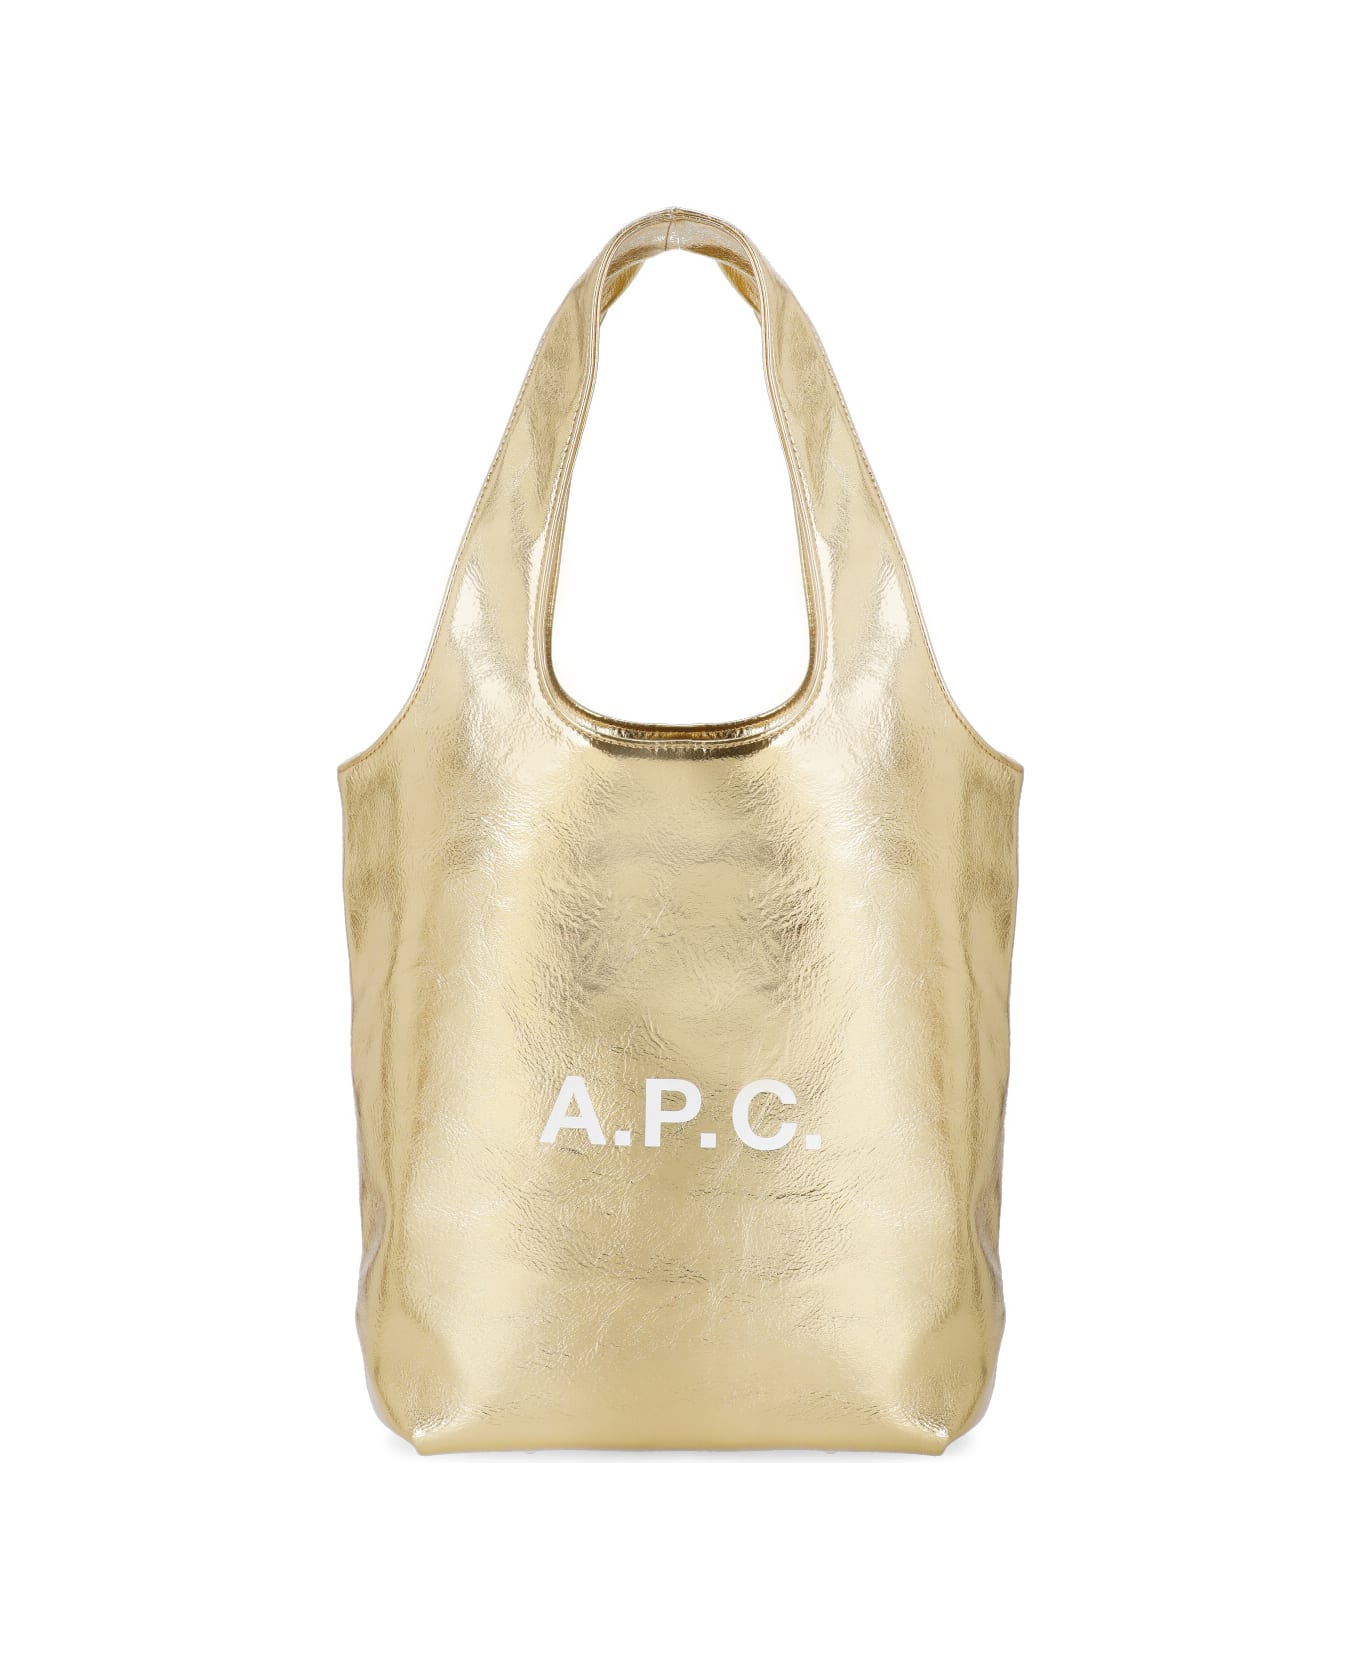 A.P.C. Ninon Tote Bag - Golden トートバッグ